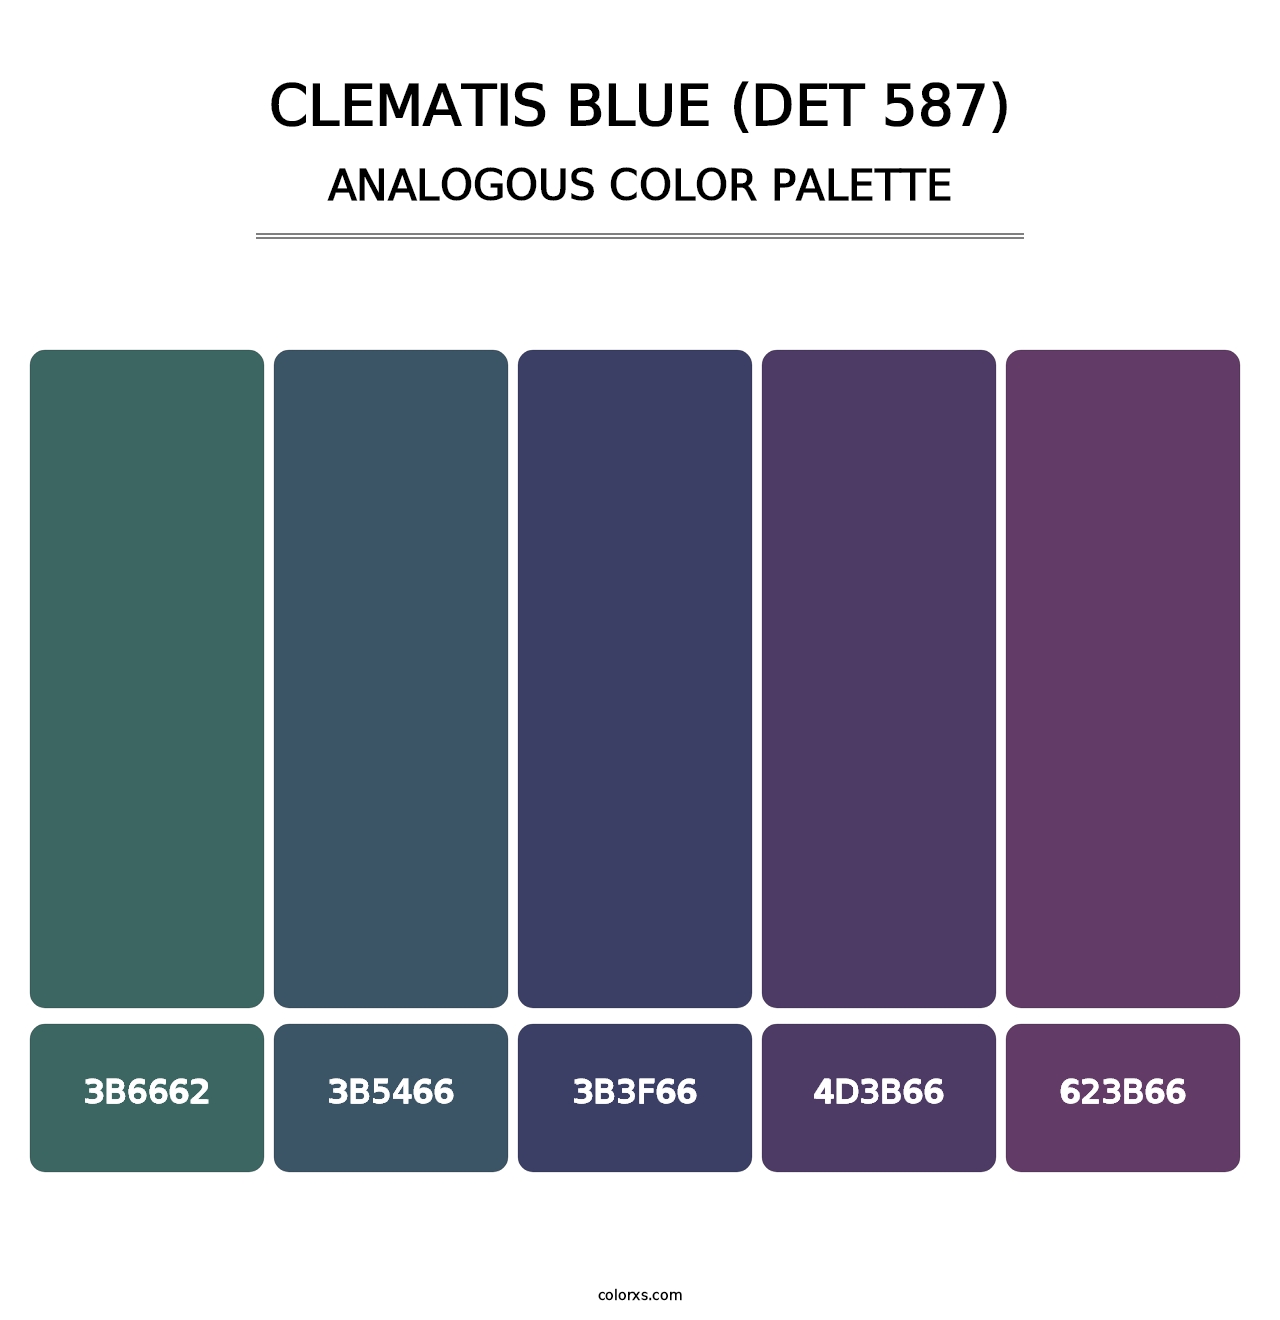 Clematis Blue (DET 587) - Analogous Color Palette